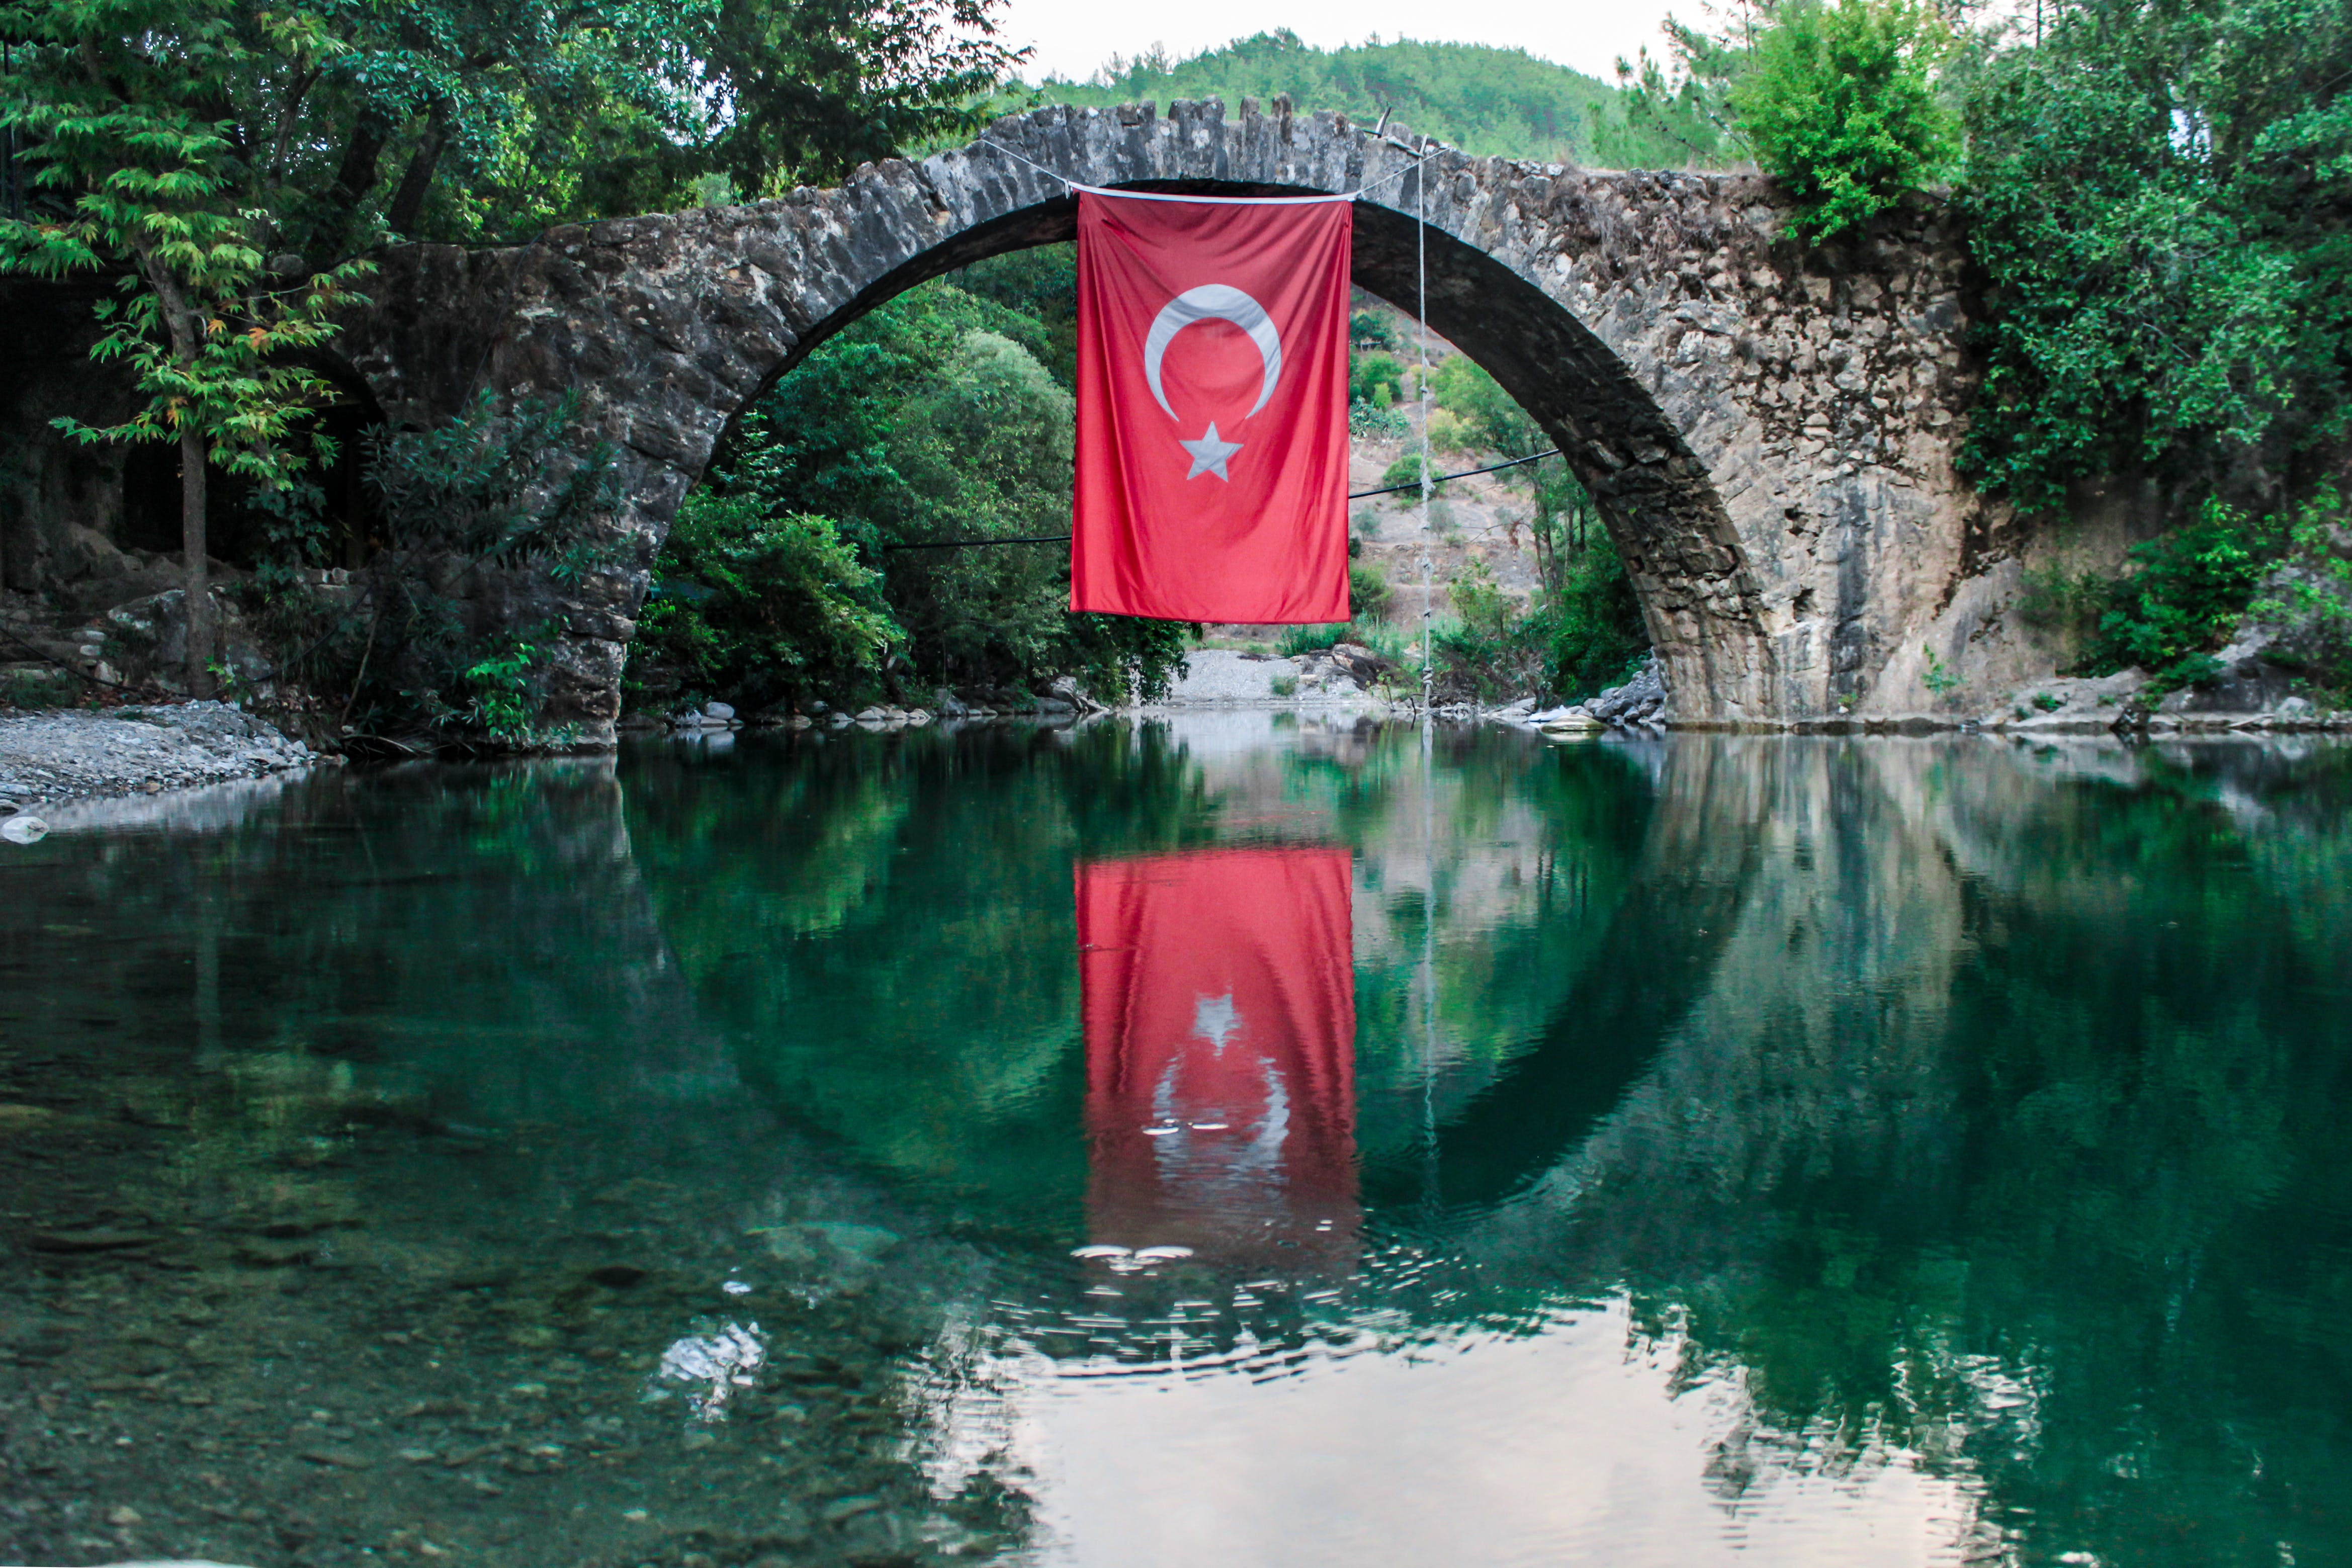 Free 土耳其国旗挂在桥上 Stock Photo